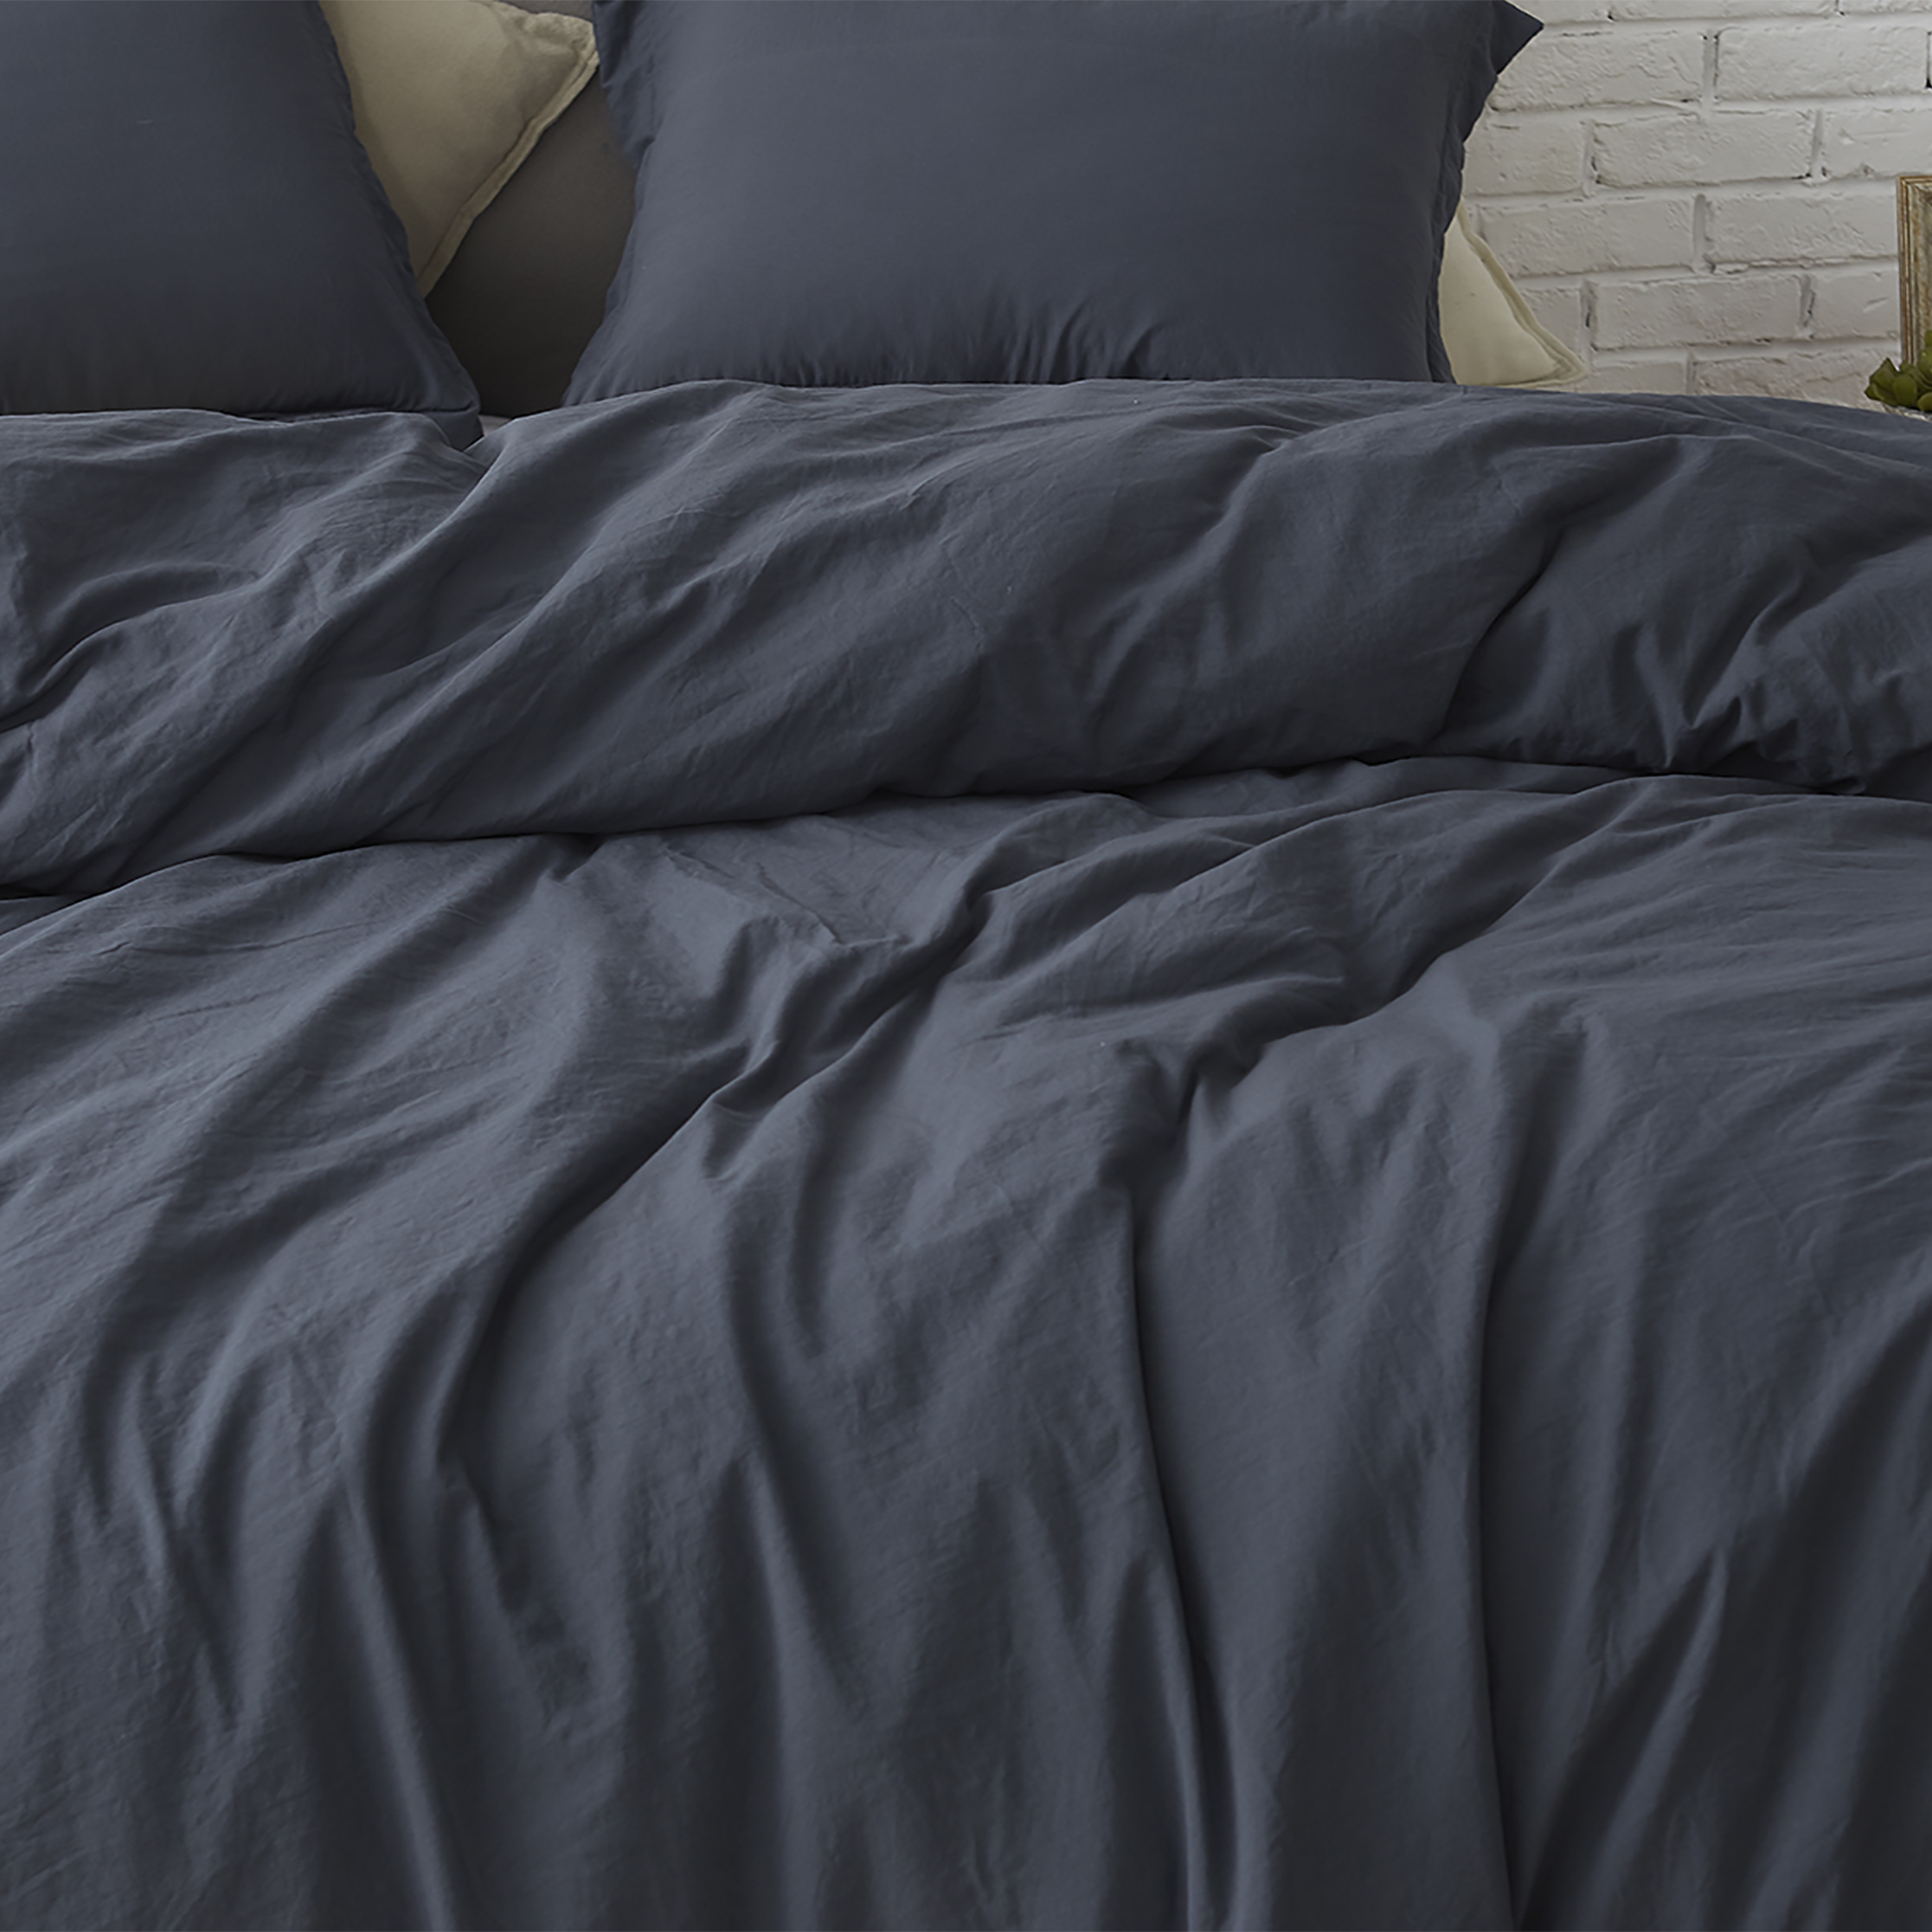 Natural Loft® King Comforter - Black